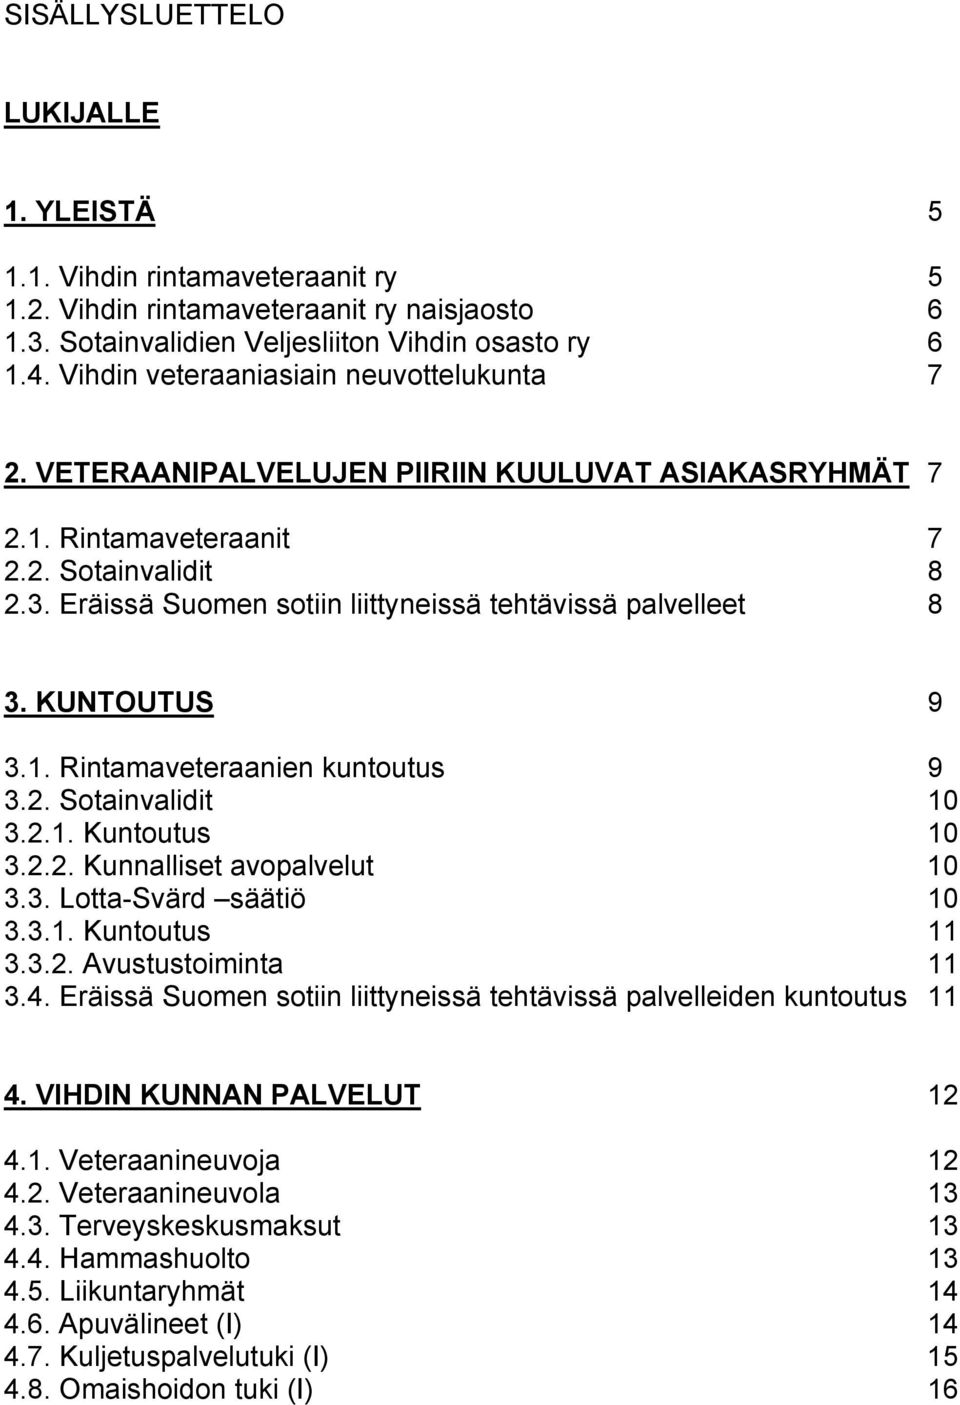 Eräissä Suomen sotiin liittyneissä tehtävissä palvelleet 8 3. KUNTOUTUS 9 3.1. Rintamaveteraanien kuntoutus 9 3.2. Sotainvalidit 10 3.2.1. Kuntoutus 10 3.2.2. Kunnalliset avopalvelut 10 3.3. Lotta-Svärd säätiö 10 3.